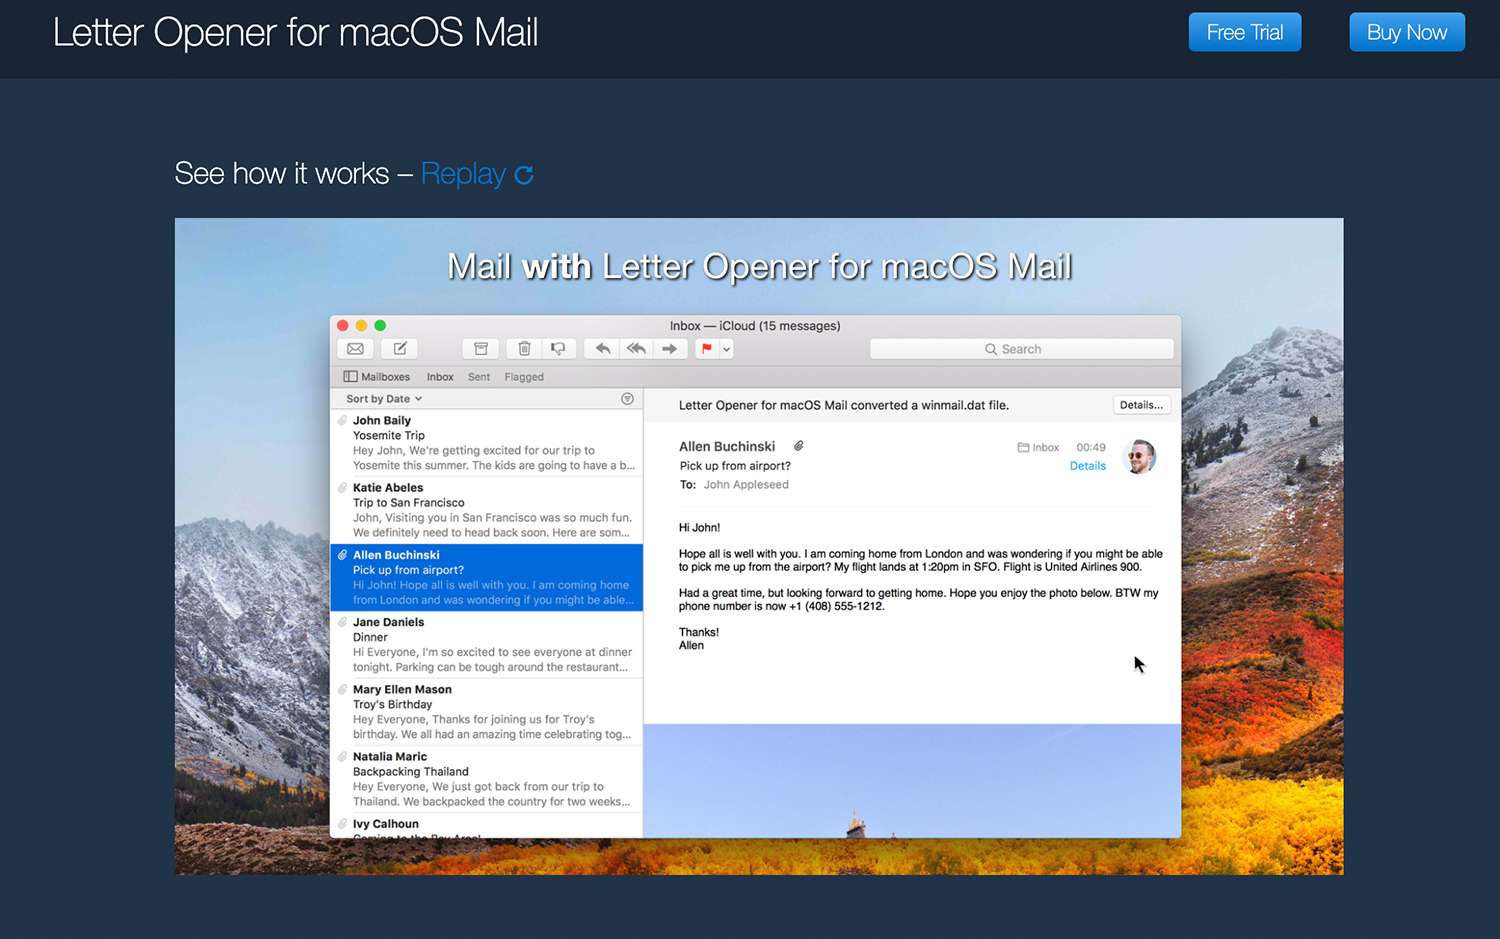 Abridor de cartas para macOS Mail